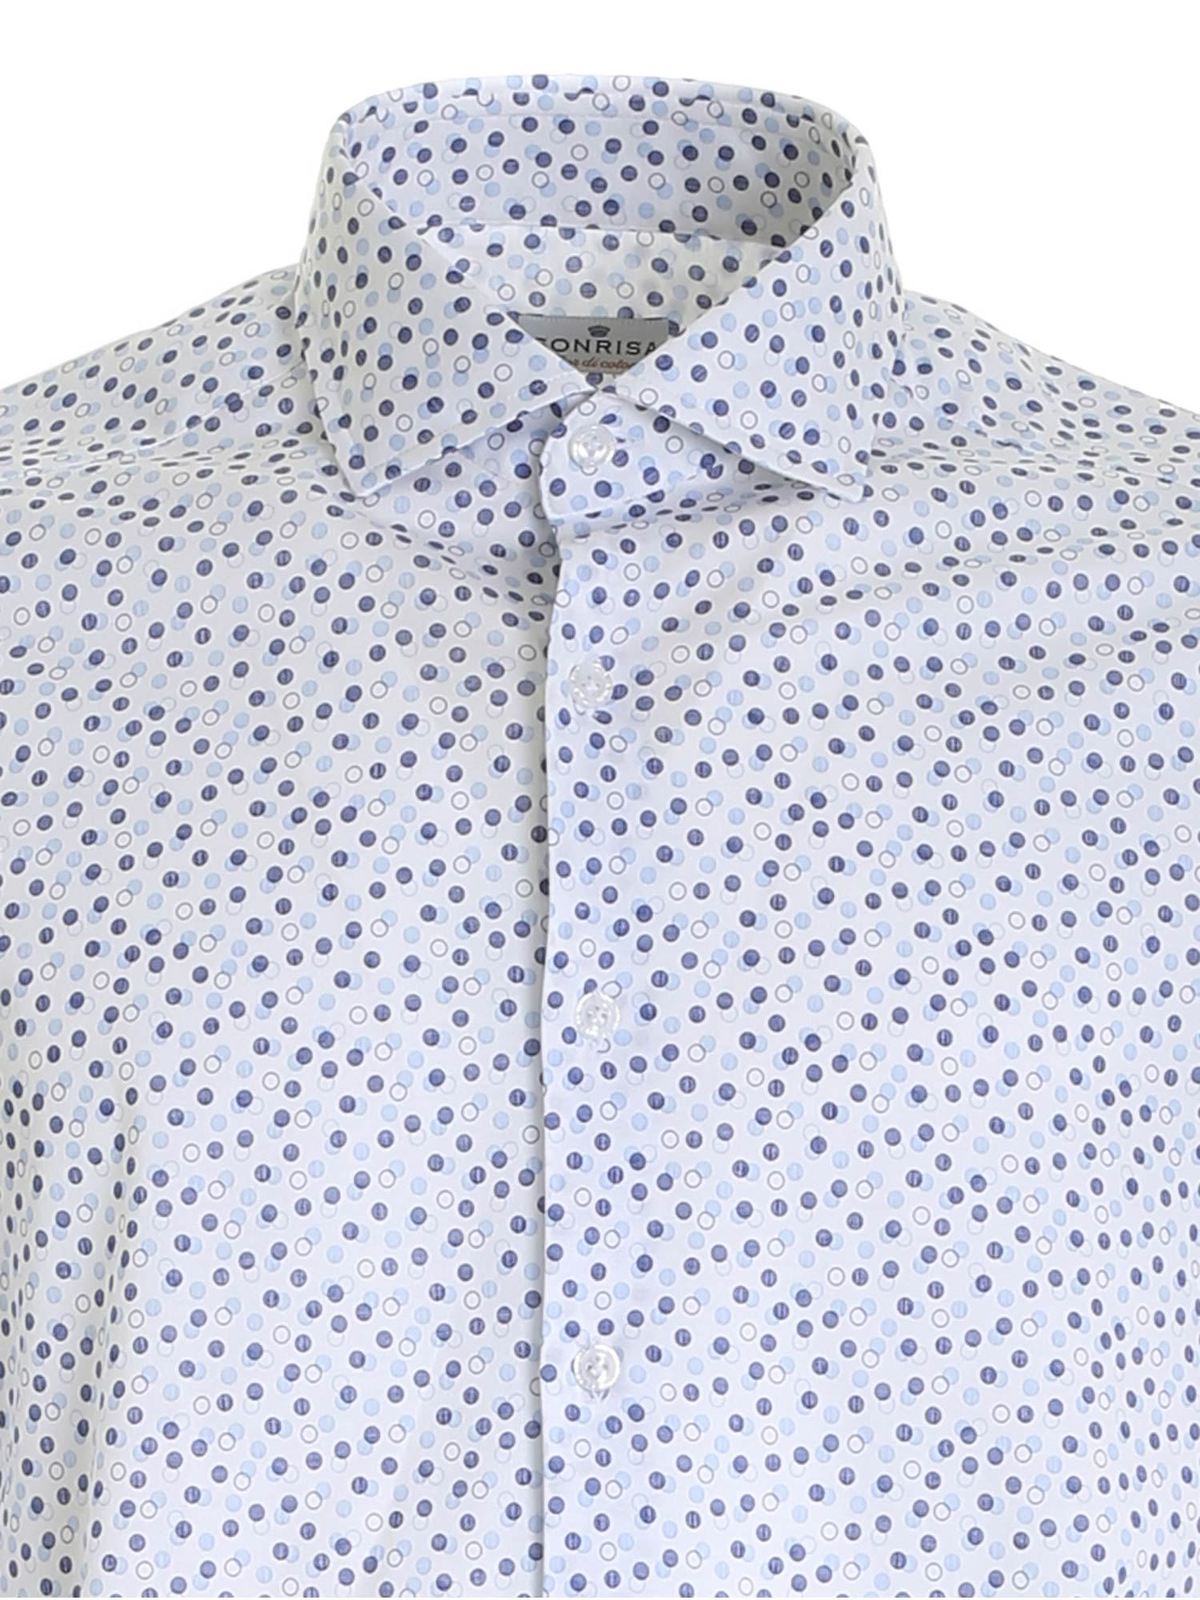 Sonrisa - Polka dot print shirt in white - shirts - FJ15J908B87804